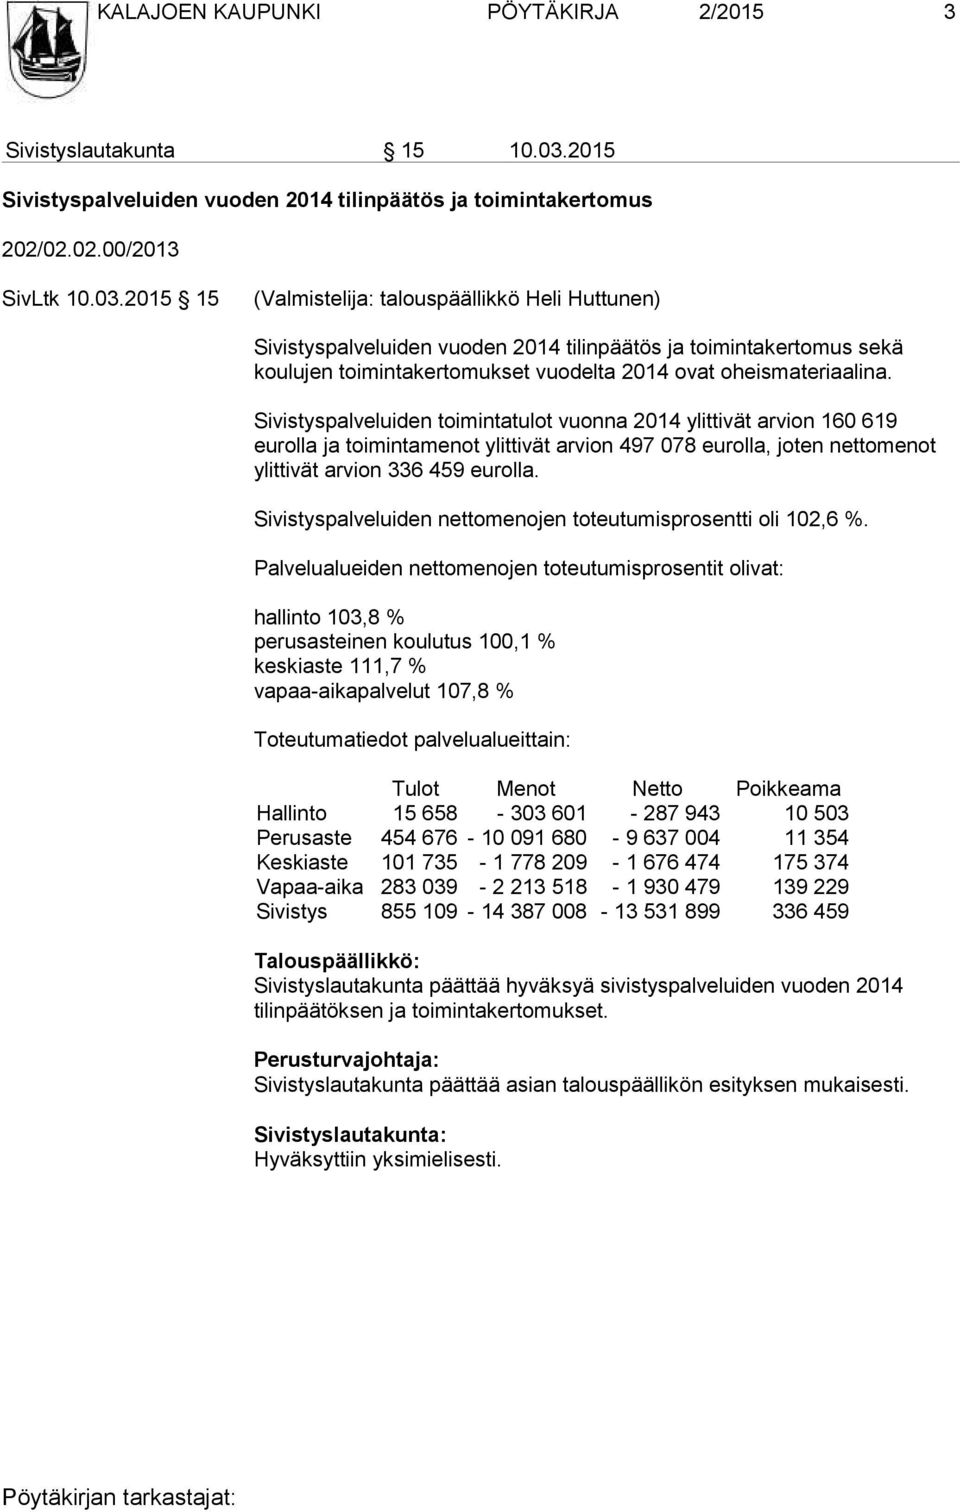 2015 15 (Valmistelija: talouspäällikkö Heli Huttunen) Sivistyspalveluiden vuoden 2014 tilinpäätös ja toimintakertomus sekä koulujen toimintakertomukset vuodelta 2014 ovat oheismateriaalina.